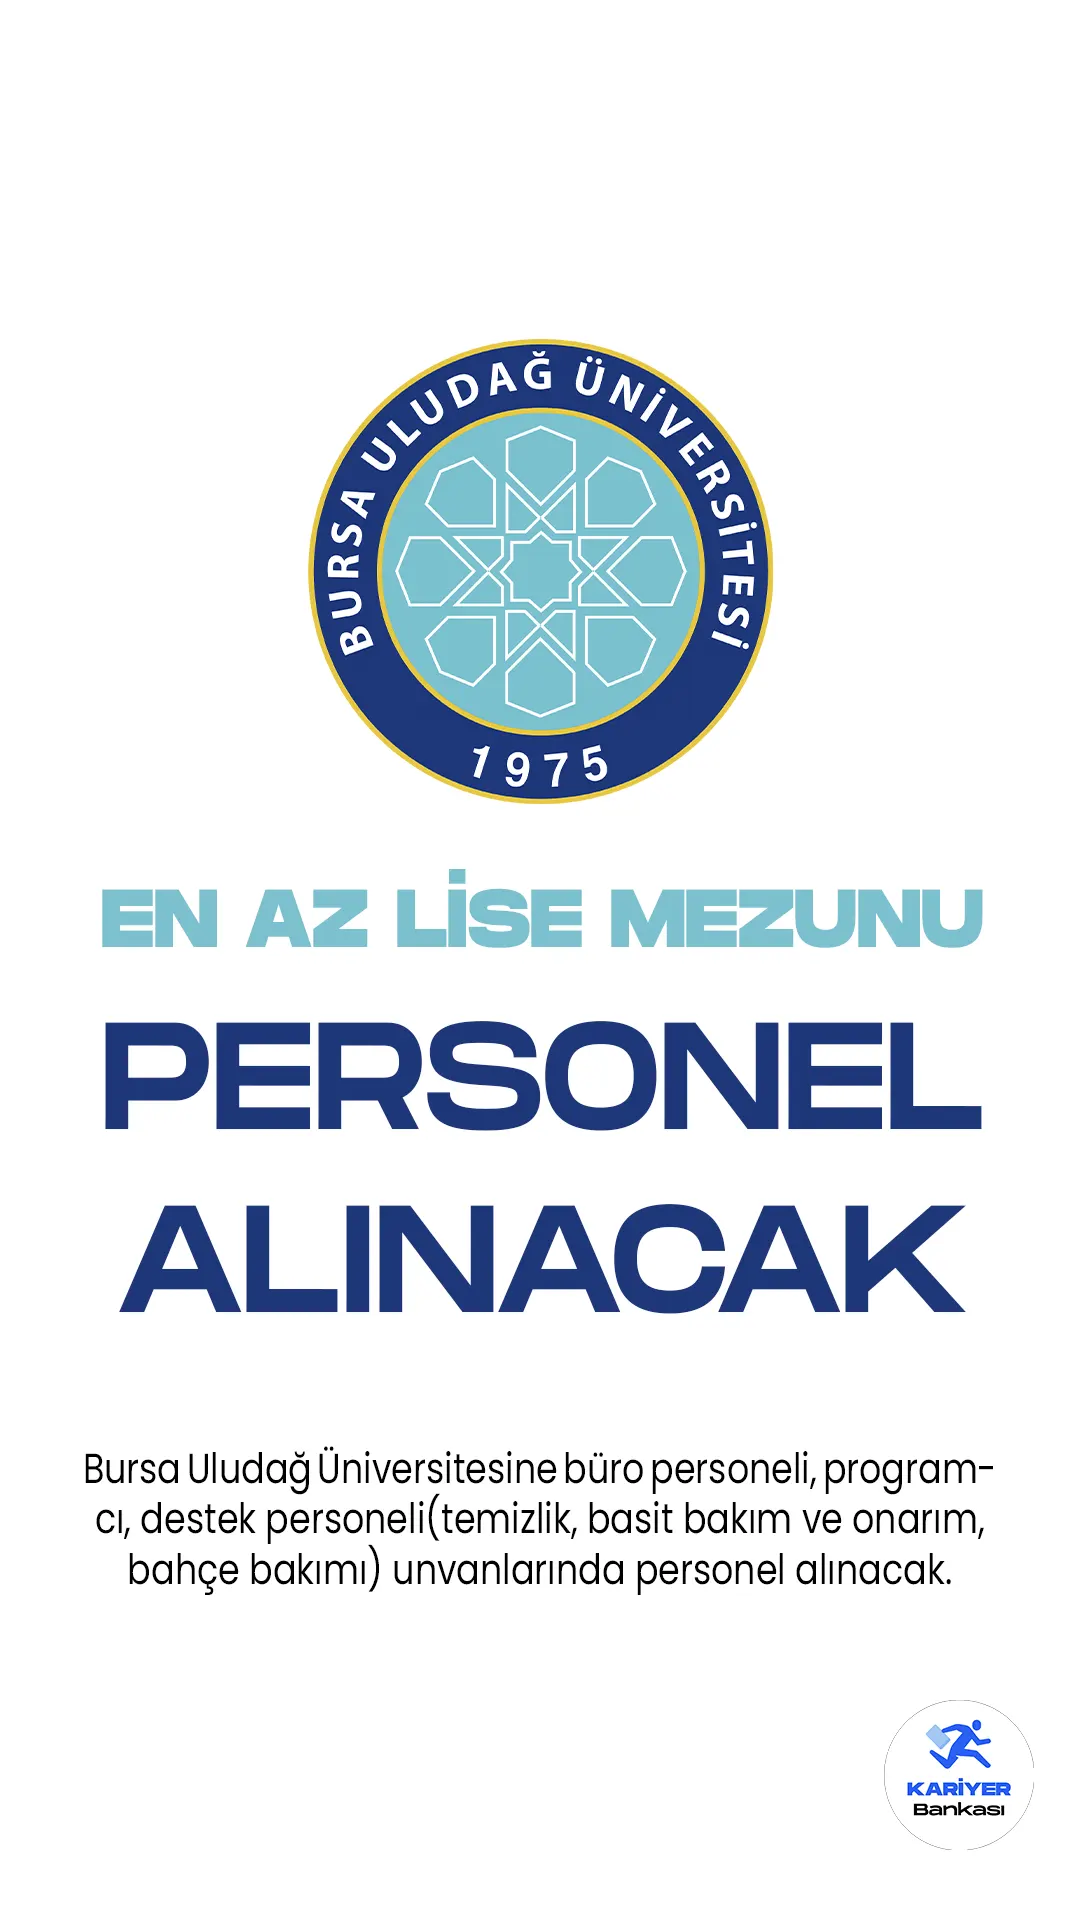 Bursa Uludağ Üniversitesi en az lise mezunlarından olmak üzere 13 personel alımı yapacak. Cumhurbaşkanlığı Strateji ve Bütçe Başkanlığında yayımlanan duyuruya göre, Üniversiteye büro personeli, programcı, destek personeli(temizlik, basit bakım ve onarım, bahçe bakımı) pozisyonları için sözleşmeli personel alınacak. Başvuruların 1 Haziran-15 Haziran 2023 tarihleri arasında alınacağı aktarılırken, başvuru işlemlerinin şahsen yapılacağı kaydedildi.